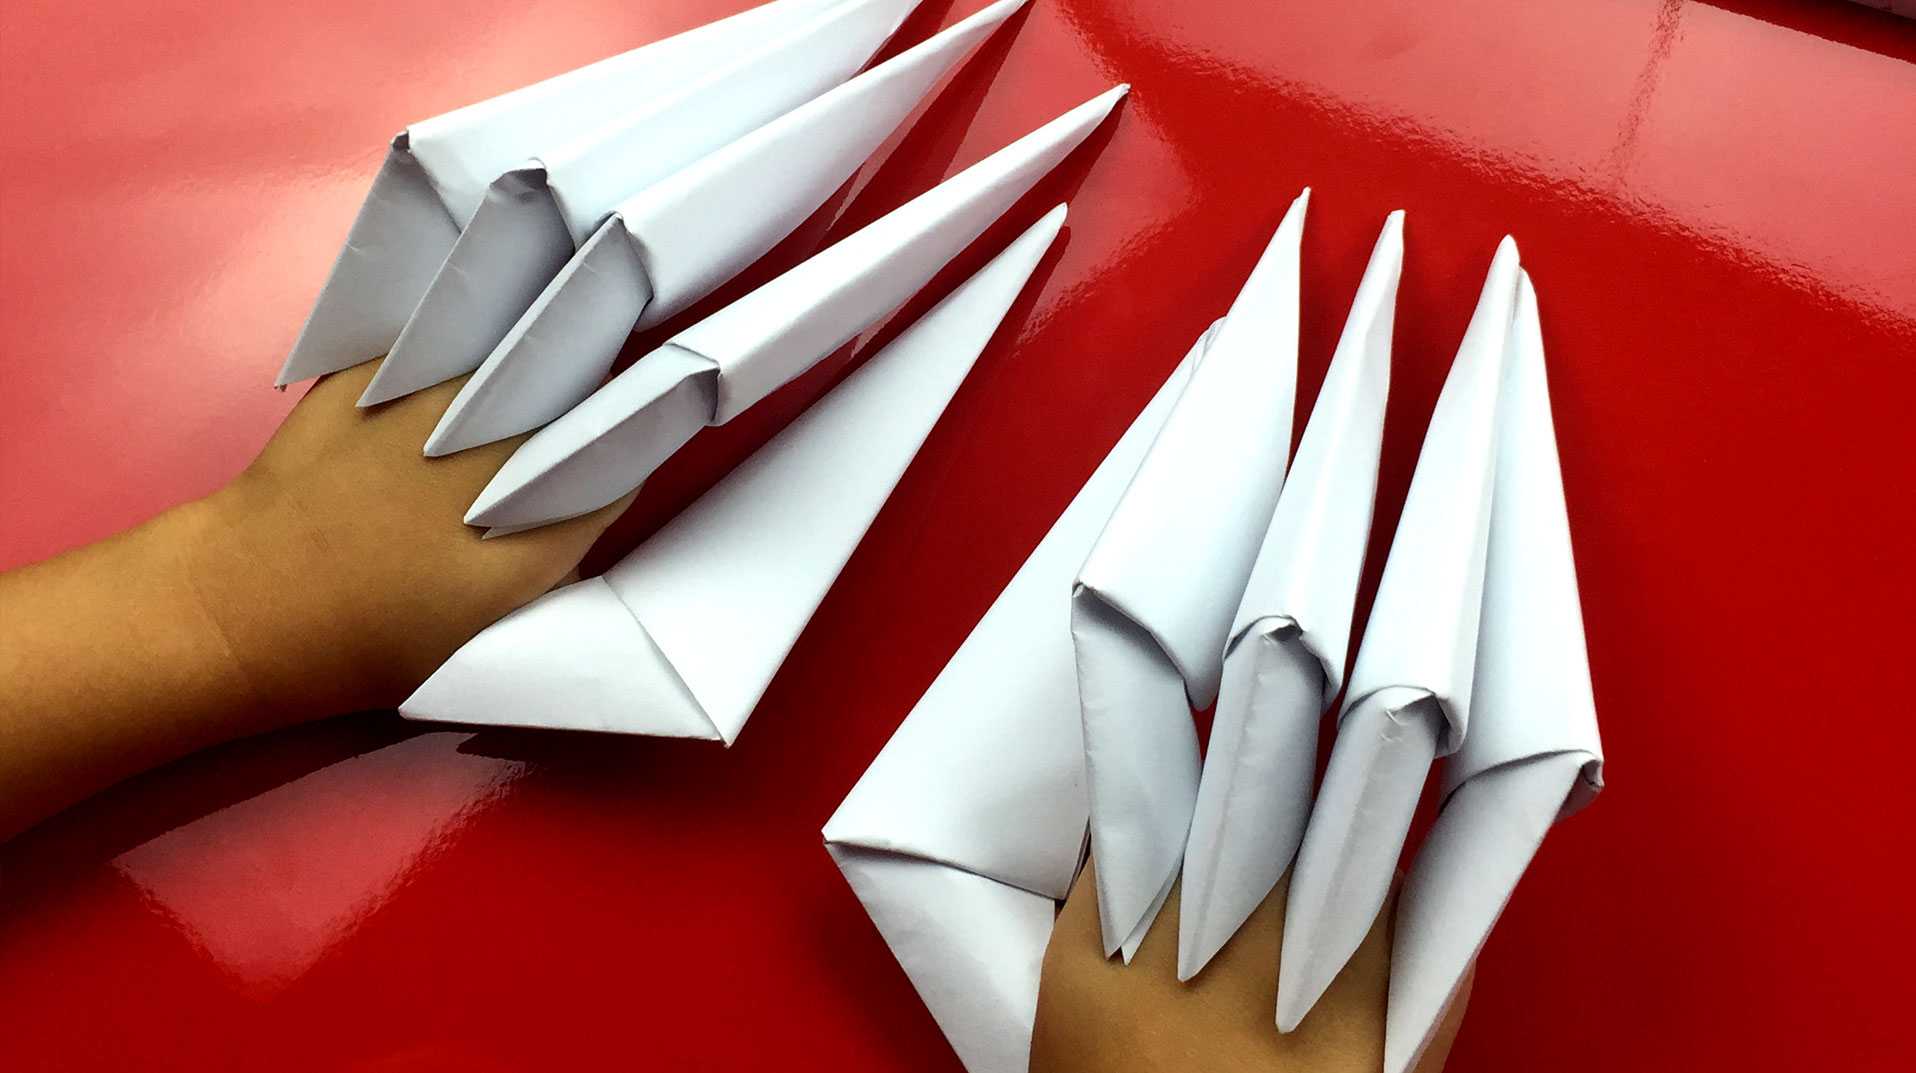 Оригами когти на пальцы своими руками из бумаги: поэтапная схема когтей росомахи и фреди крюгера